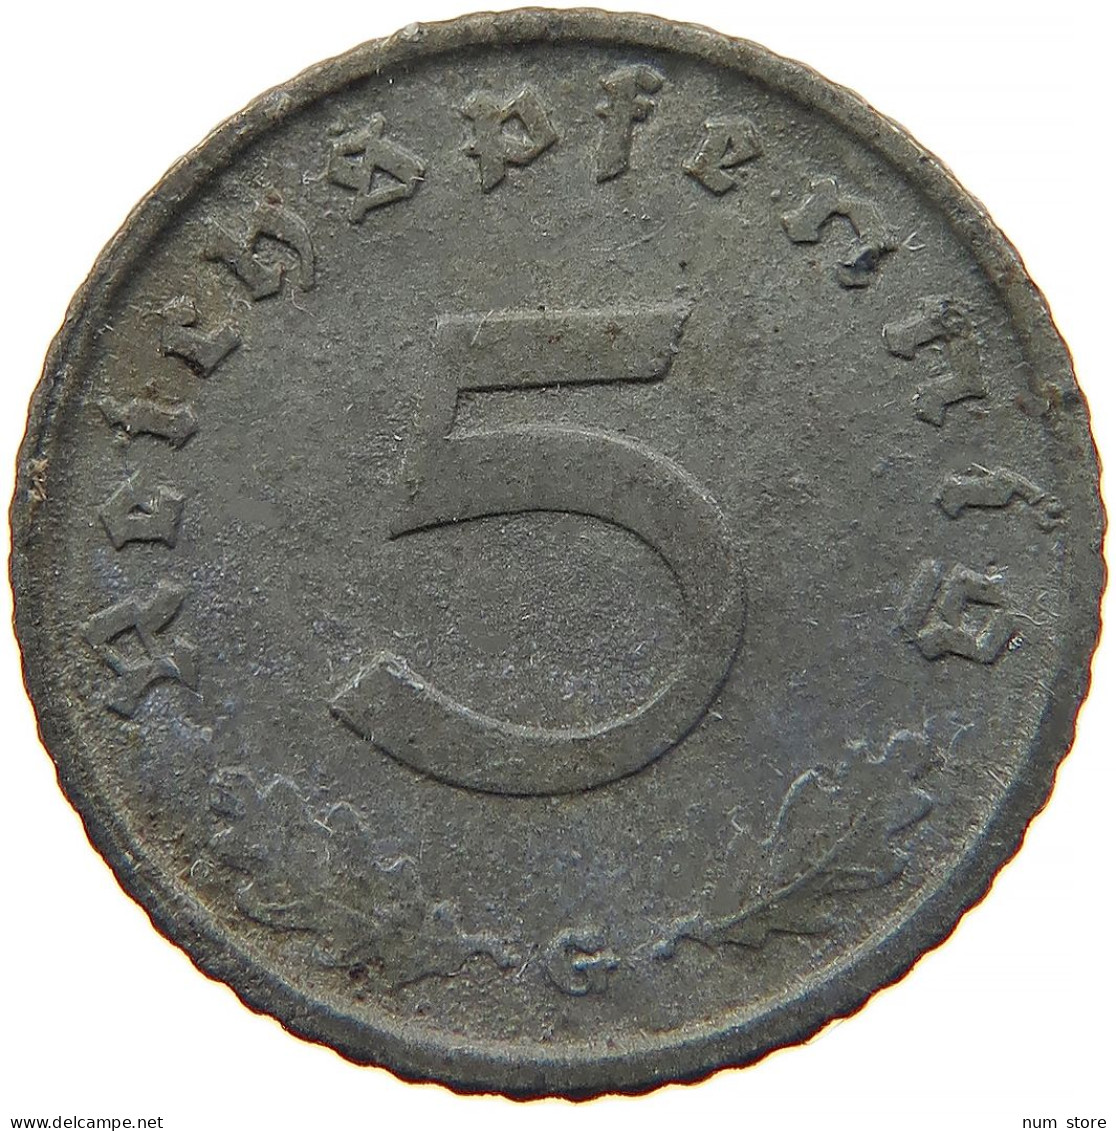 GERMANY 5 REICHSPFENNIG 1943 G #s091 0829 - 5 Reichspfennig